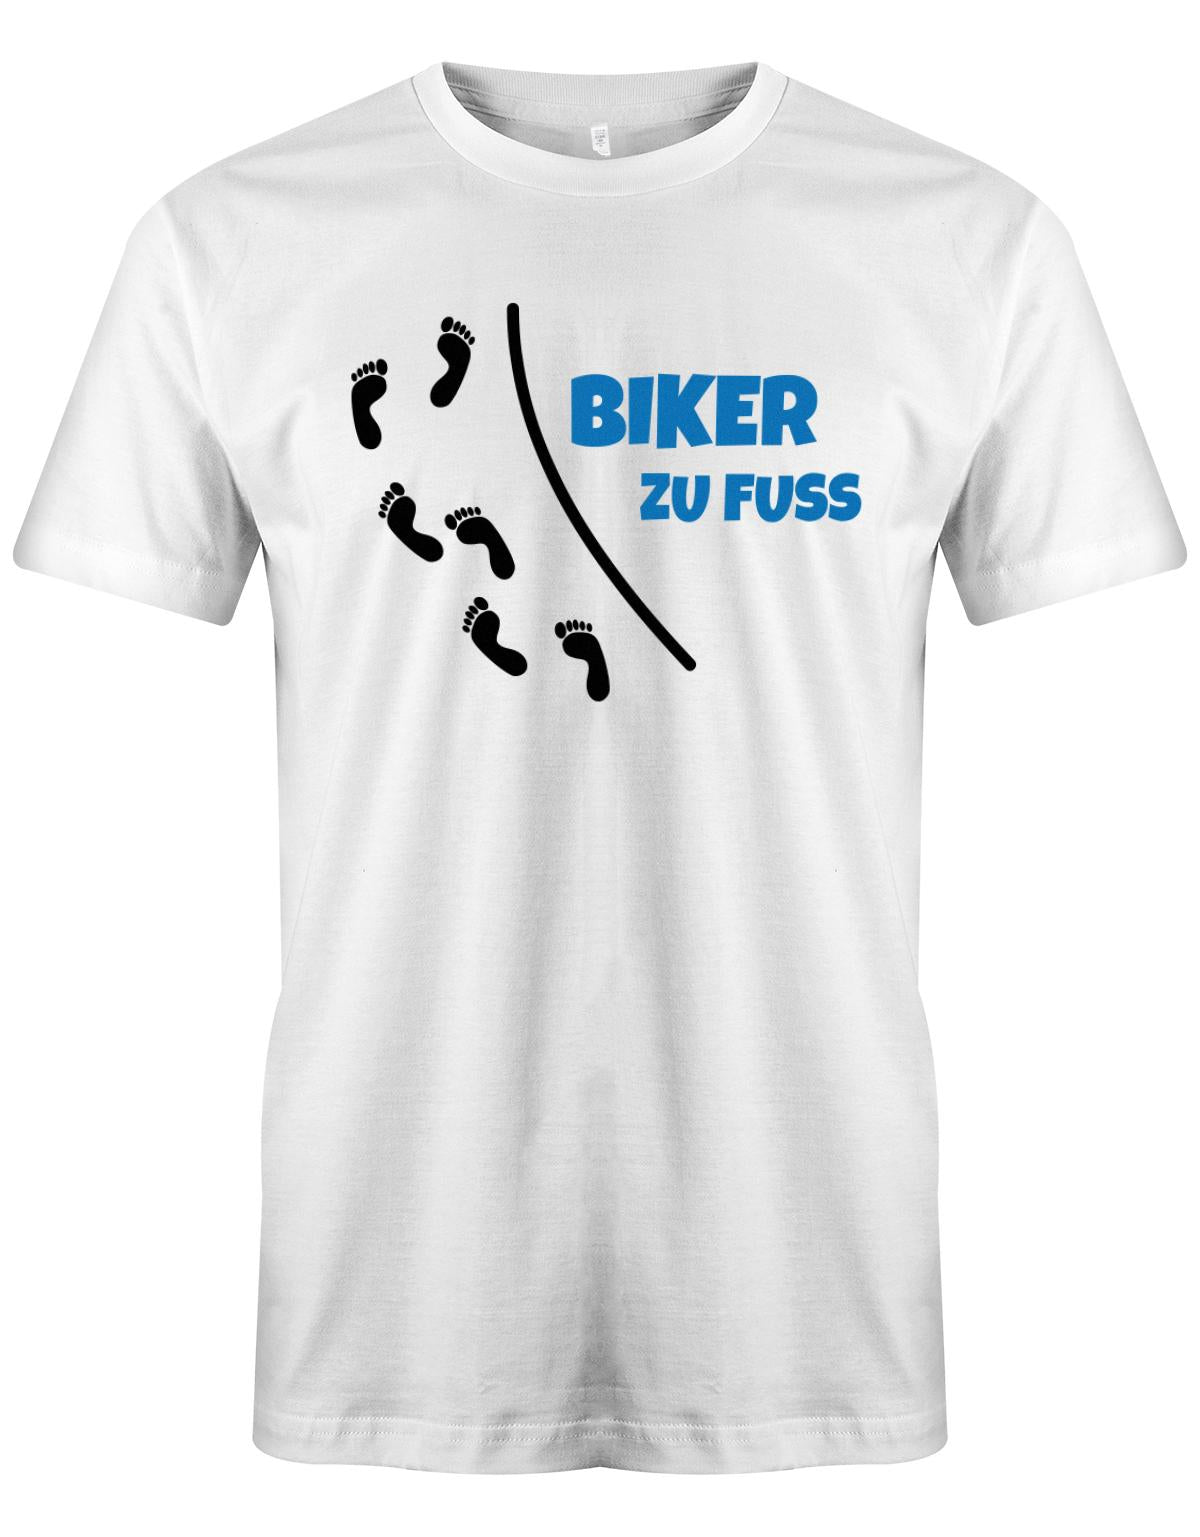 Biker-Zu-Fuss-Herren-Shirt-Weiss